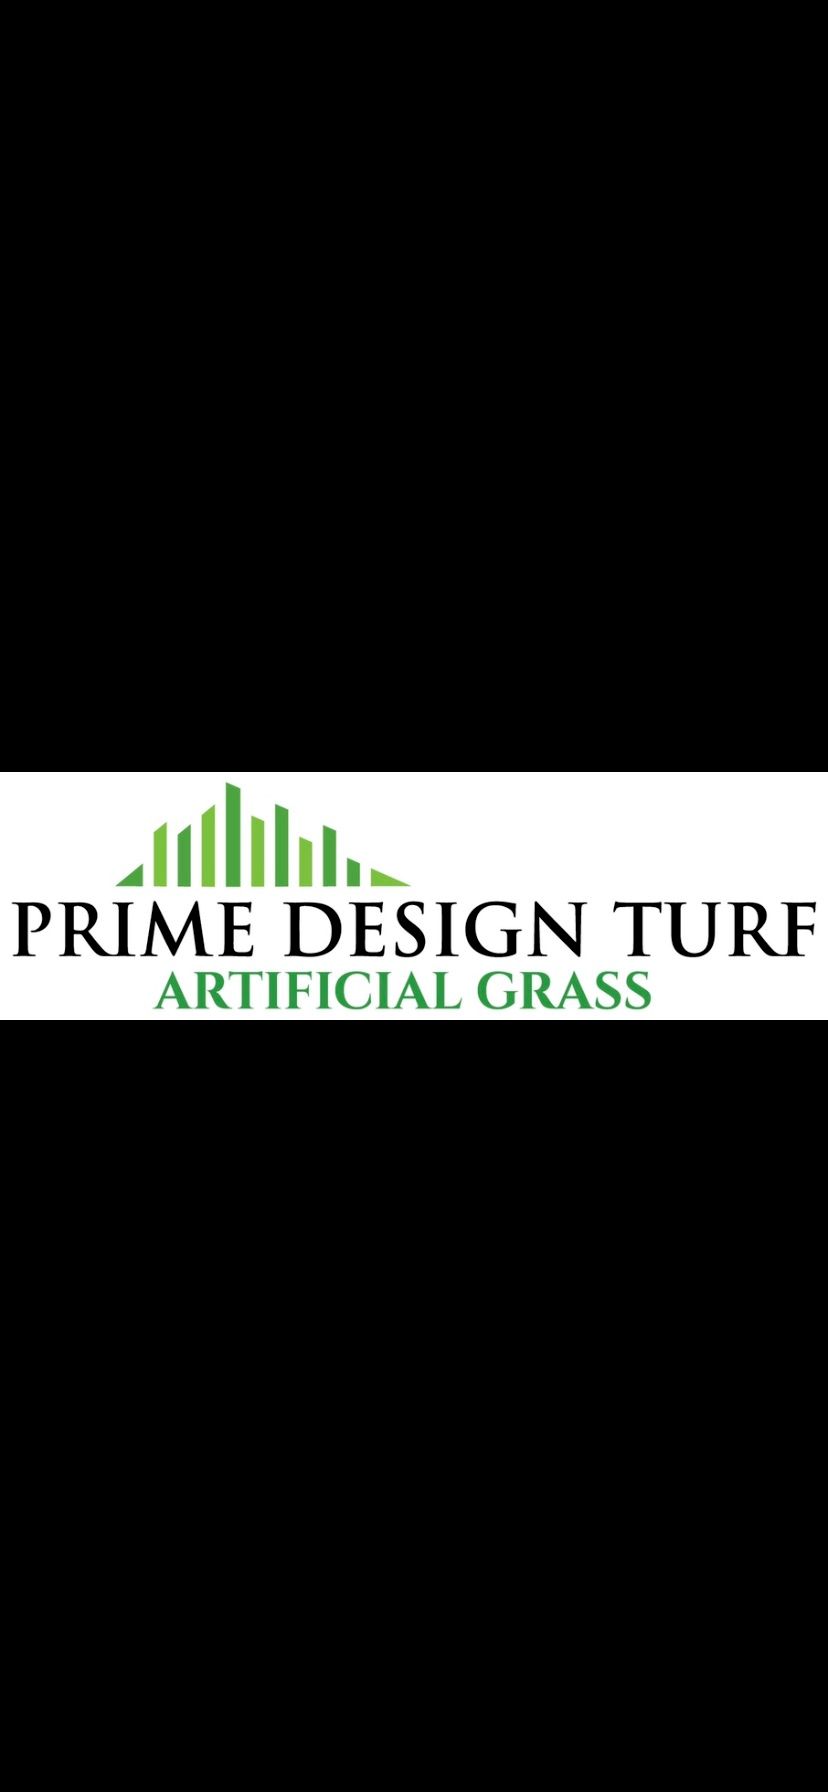 Prime Design Turf